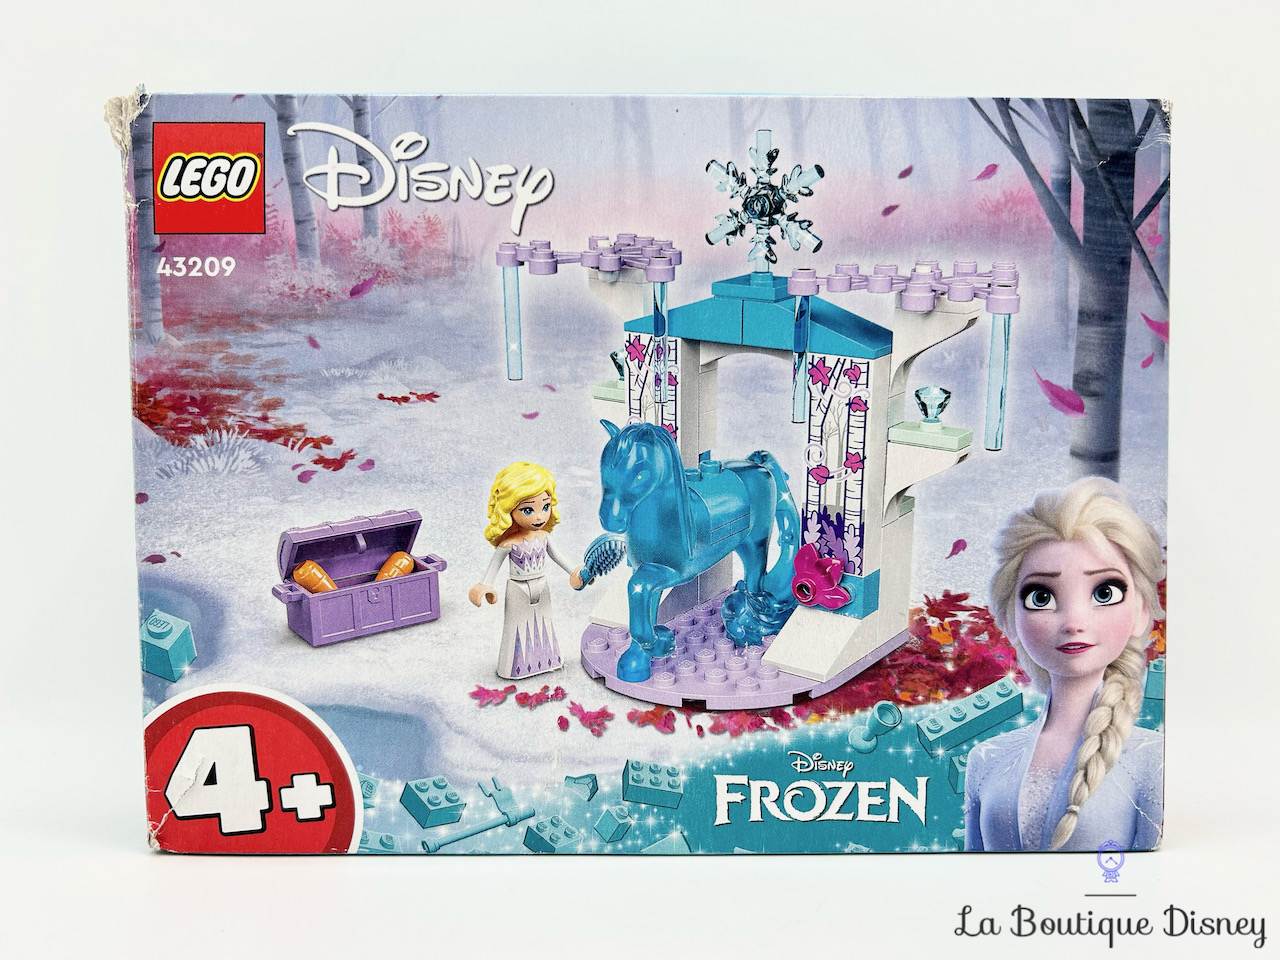 jouet-lego-43209-elsa-écurie-glace-nokk-la-reine-des-neiges-disney-frozen-1